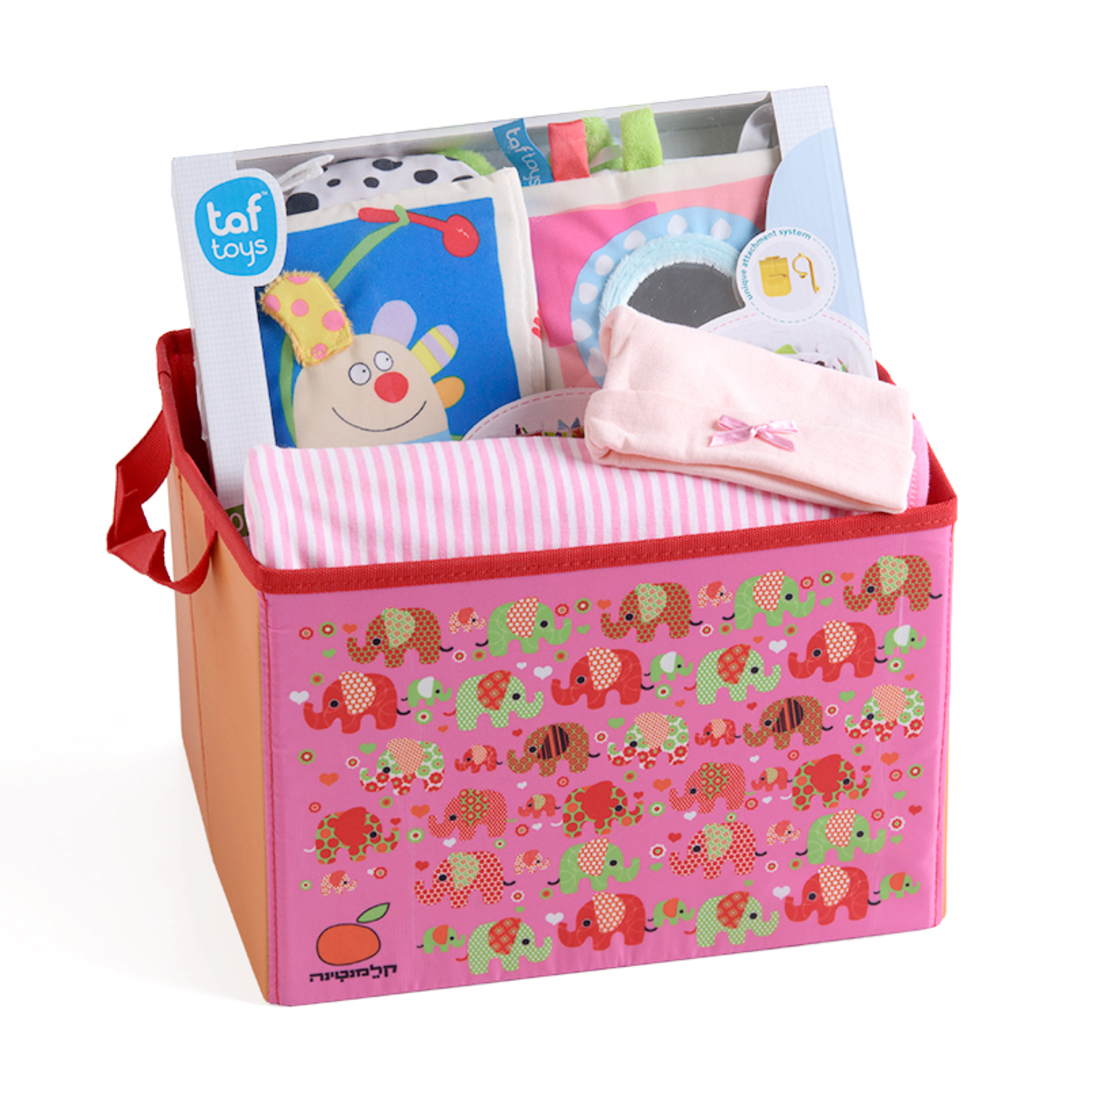 13# - התרגשות בלב לבת : חבילת לידה מרגשת ובה שמיכה, ספר בד וכובע בקופסת צעצועים